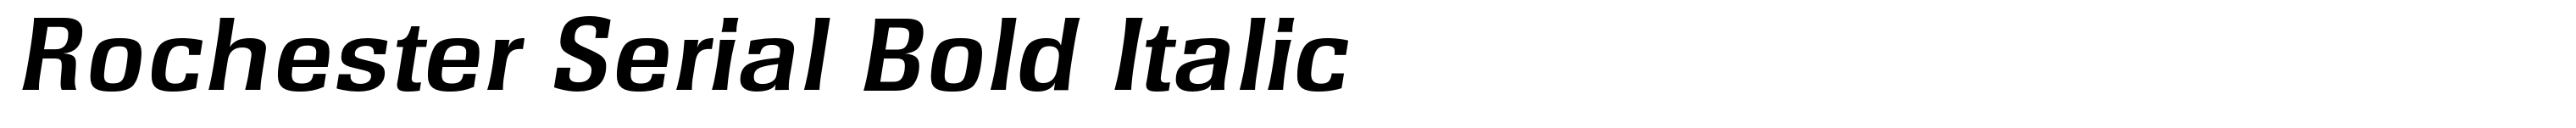 Rochester Serial Bold Italic